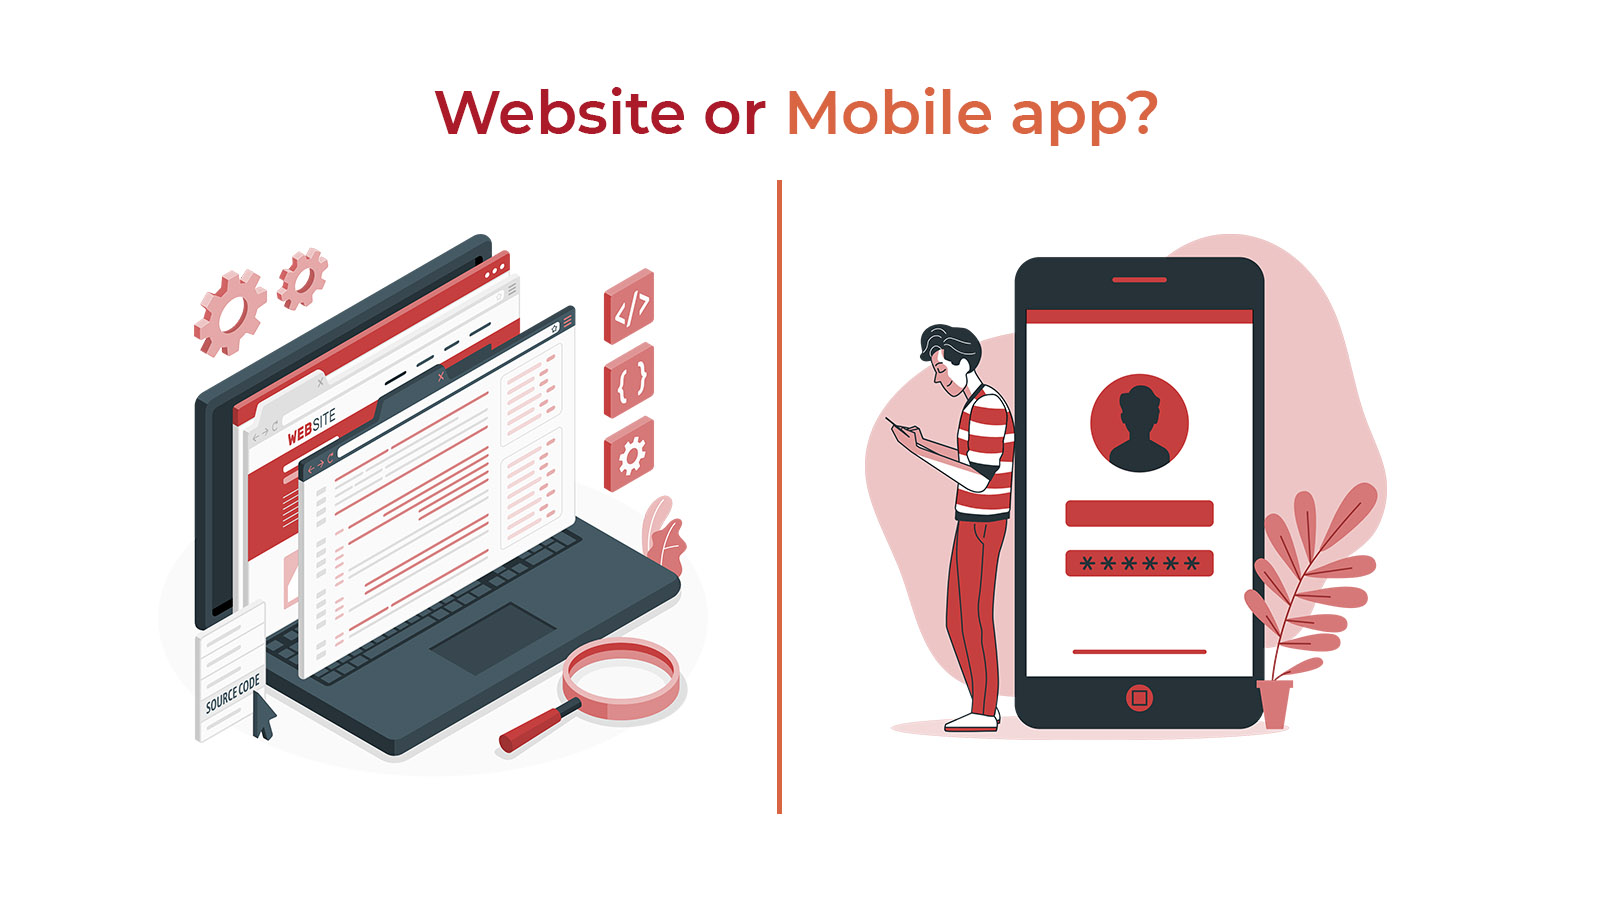 Website or Mobile app?